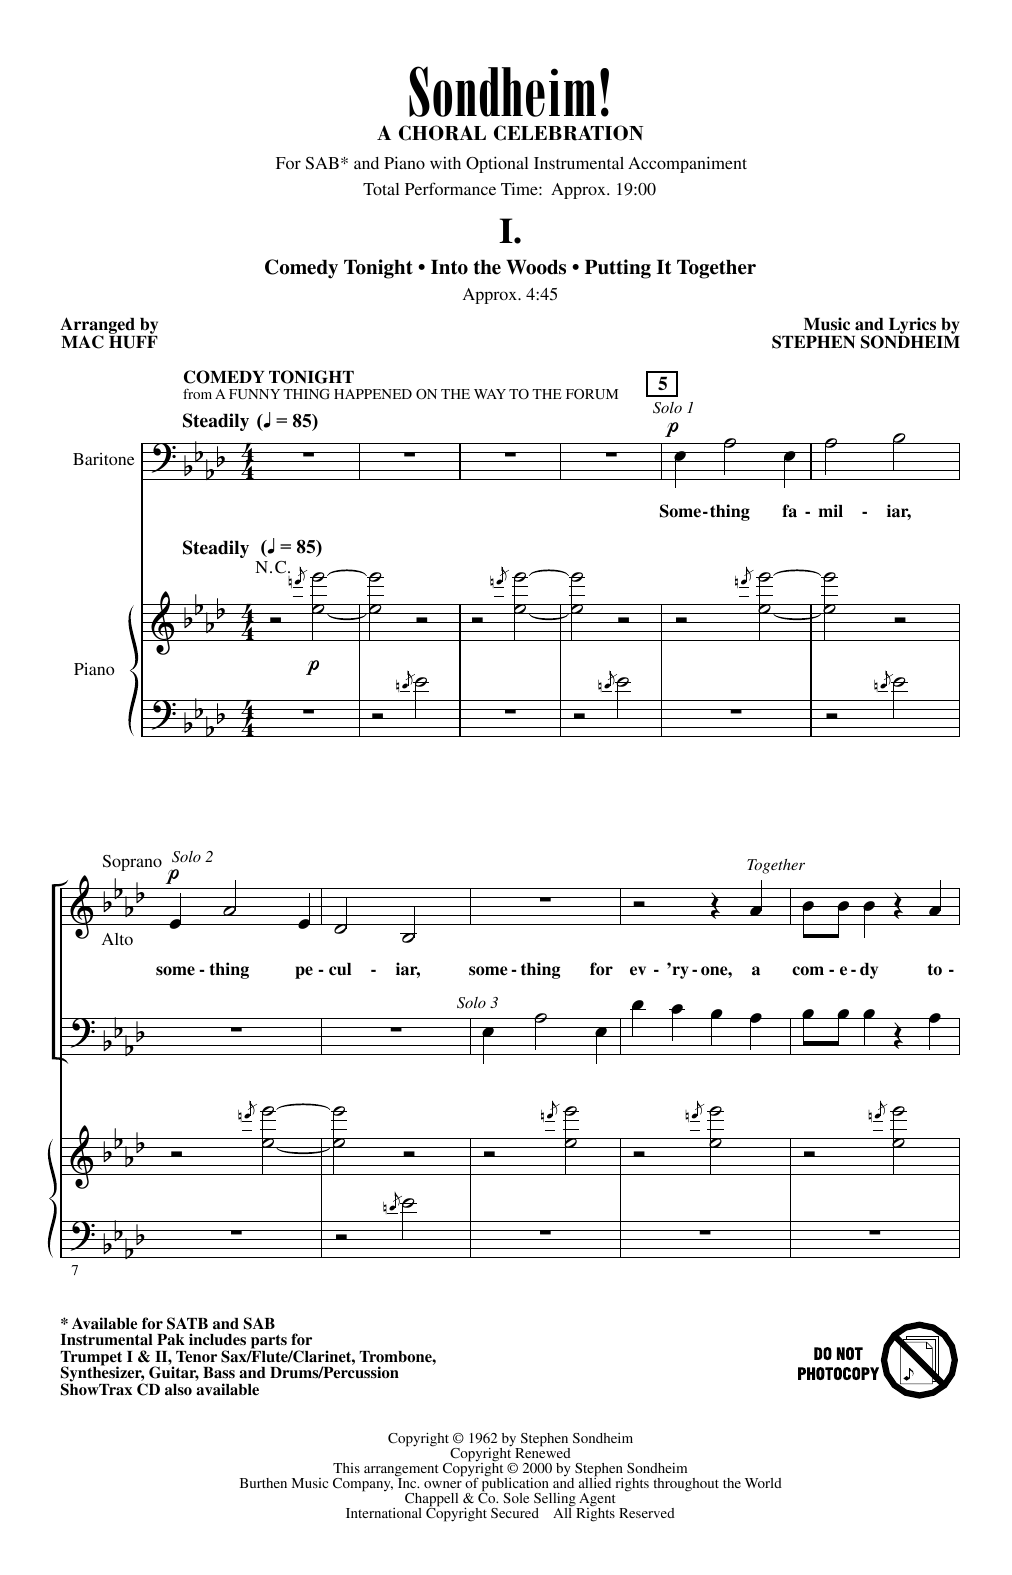 Download Stephen Sondheim Sondheim! A Choral Celebration (Medley) Sheet Music